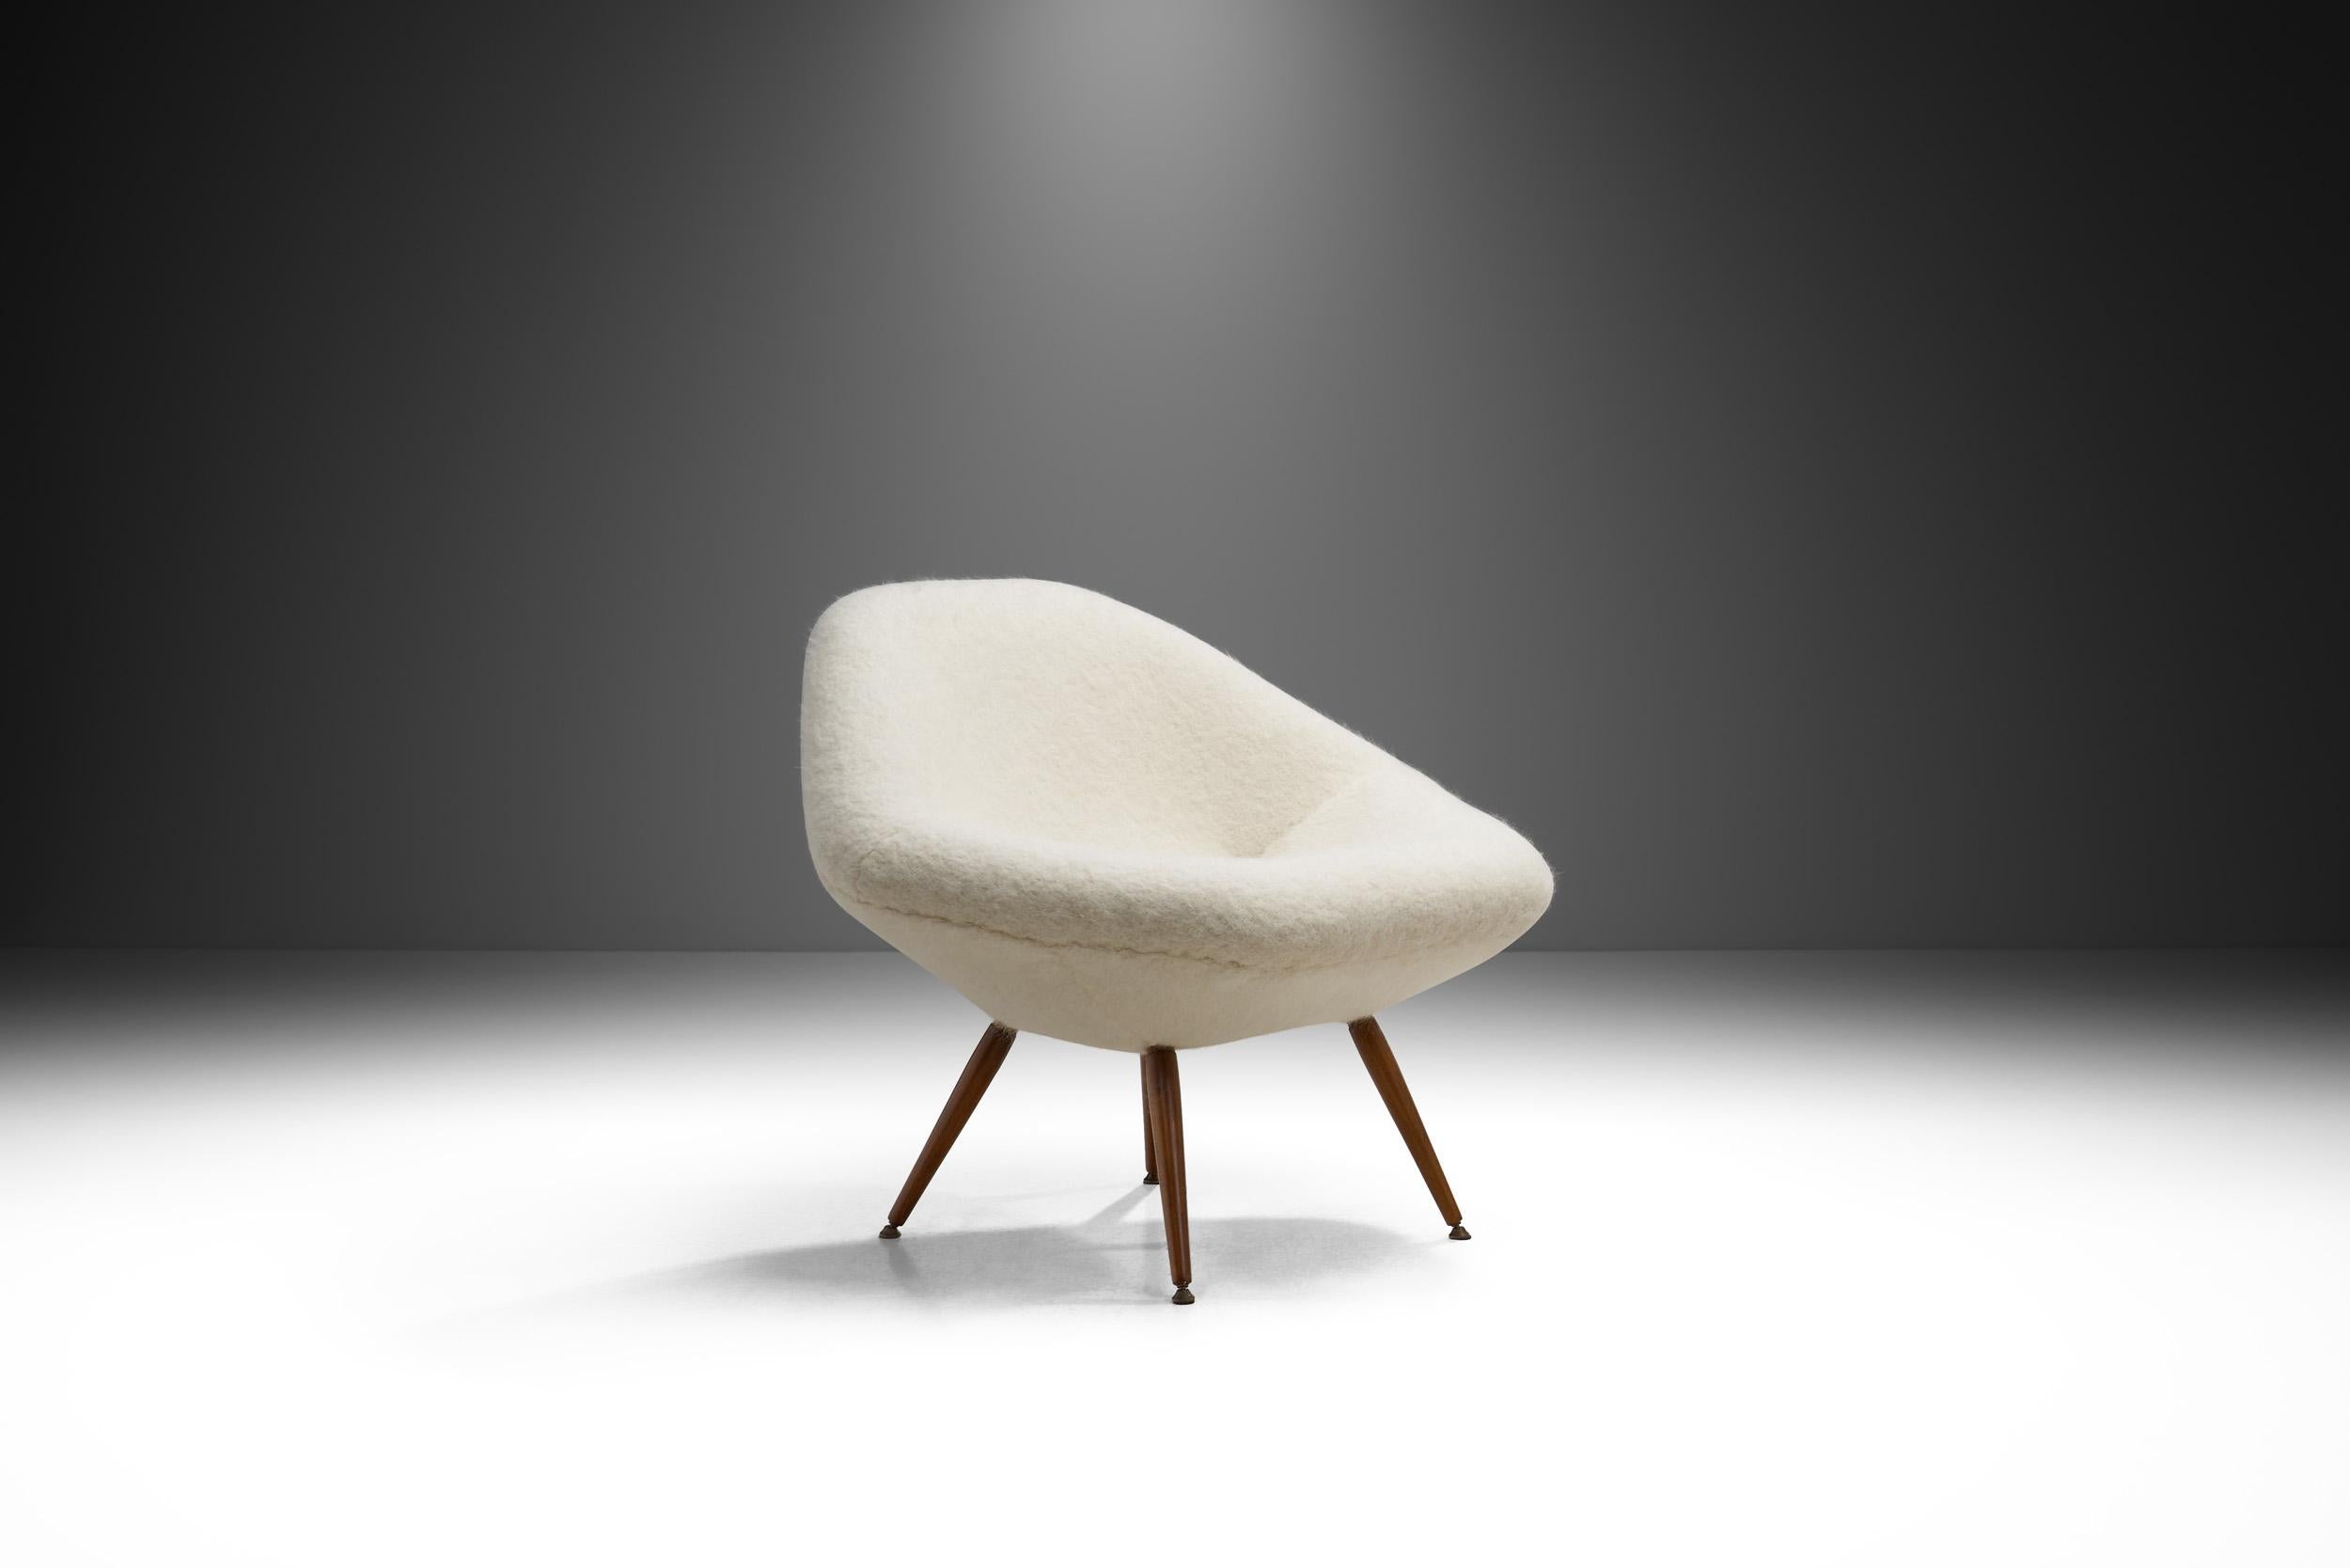 Schwedisches Möbeldesign ist eine modernistische Geschichte von beständigem Stil. Mit seiner eleganten Schalenform verkörpert dieser Loungesessel die zeitlose Anziehungskraft schwedischer Möbel, die in der Vergangenheit von einer Reihe ikonischer